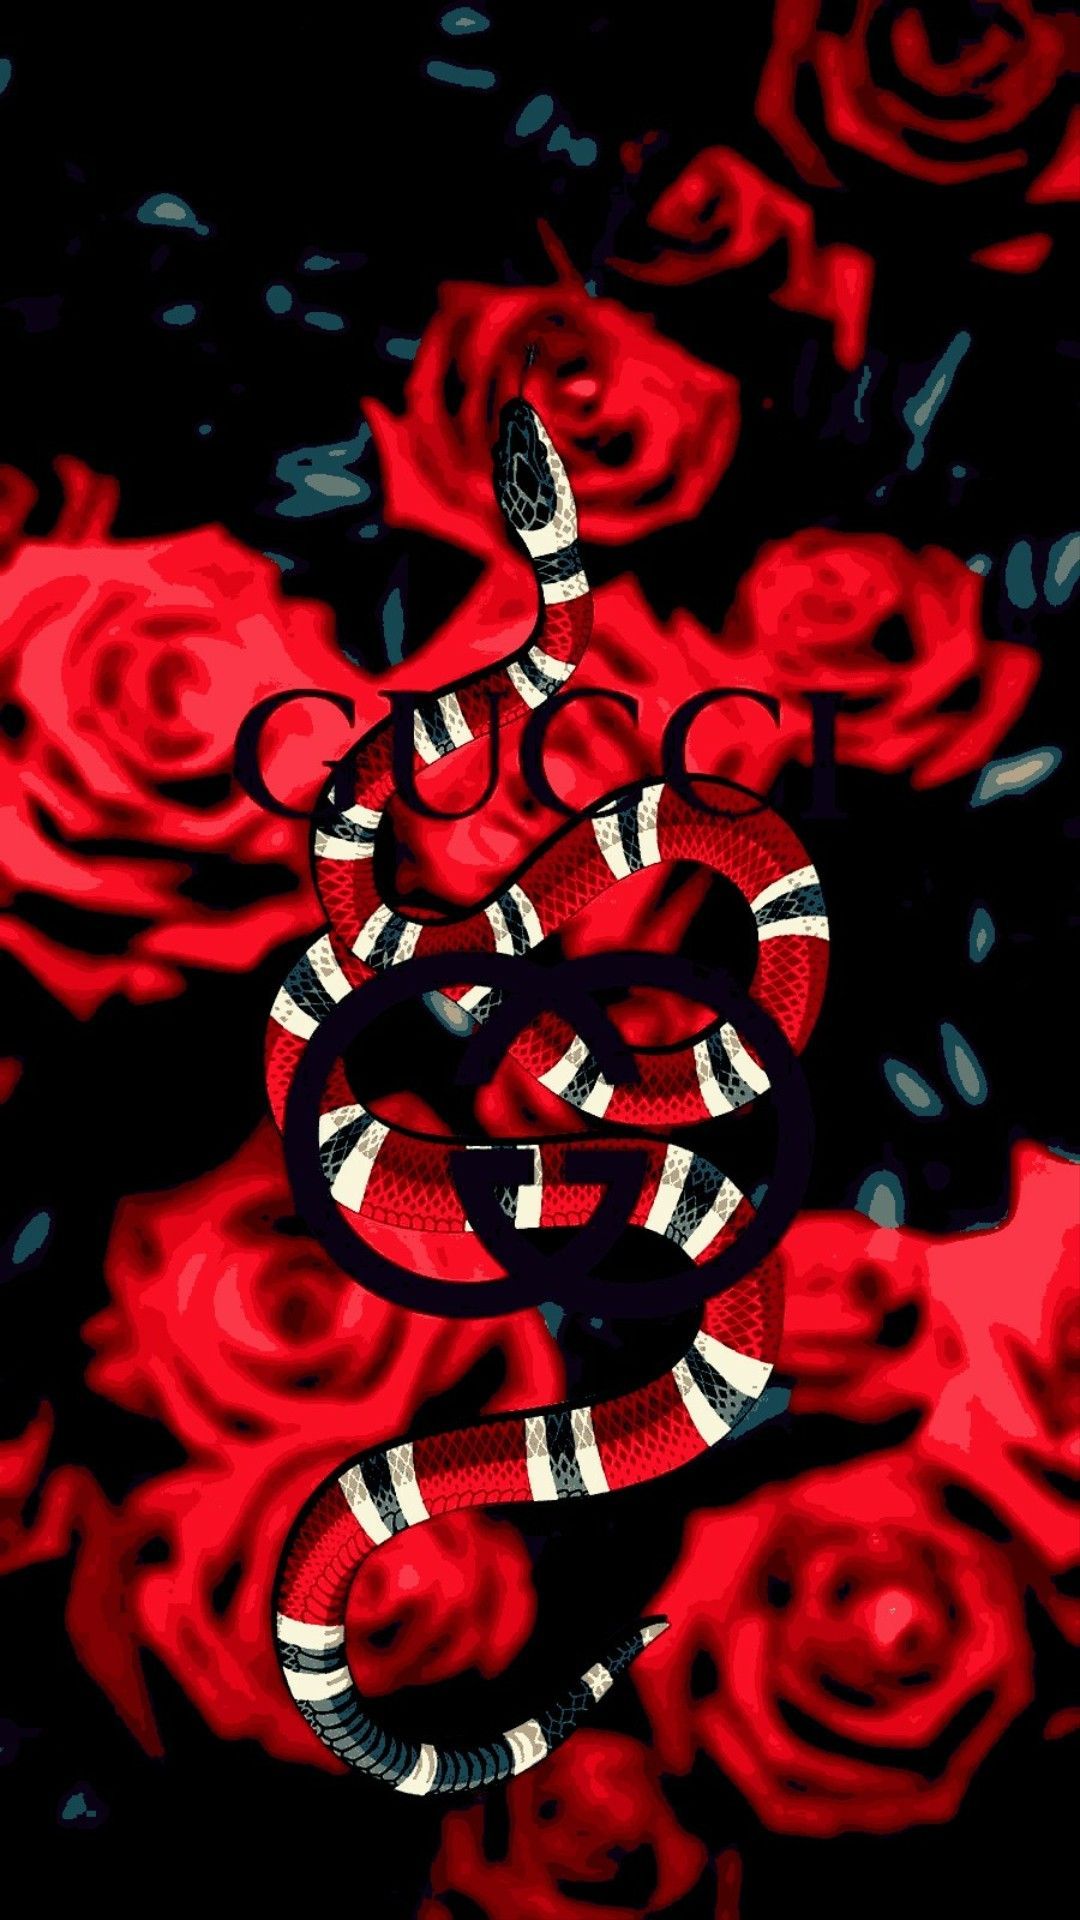 Rosas De Gucci Serpiente - Fondo Rojo Gucci, Fondos De Pantalla Hd